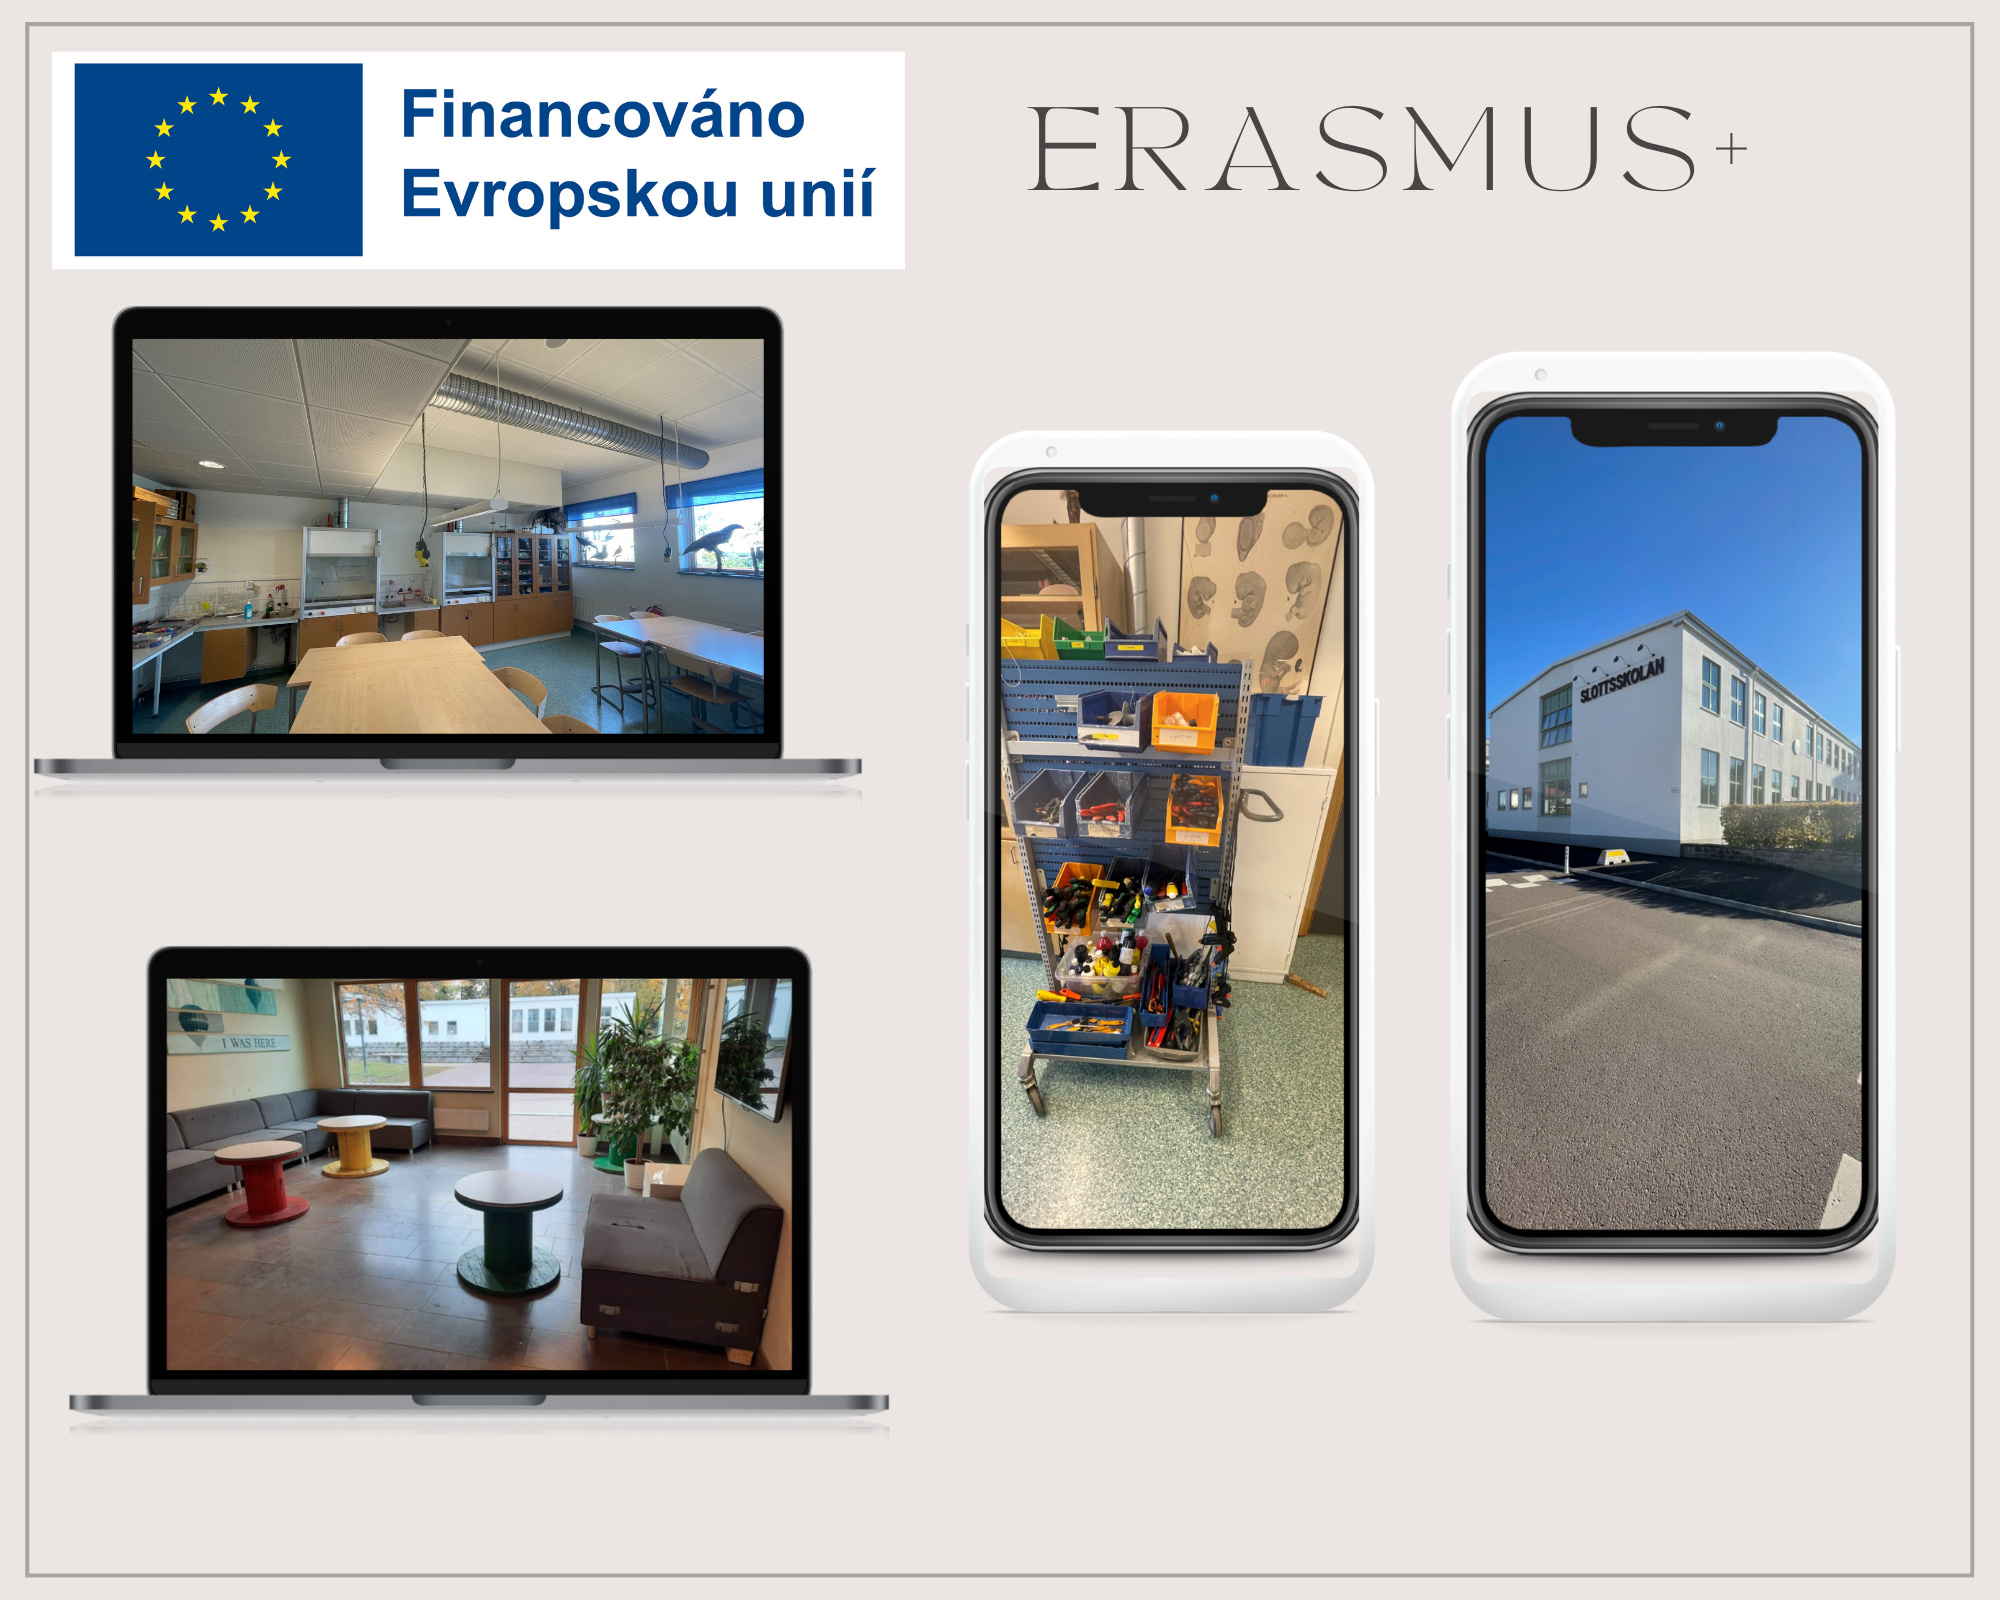 Erasmus+.png